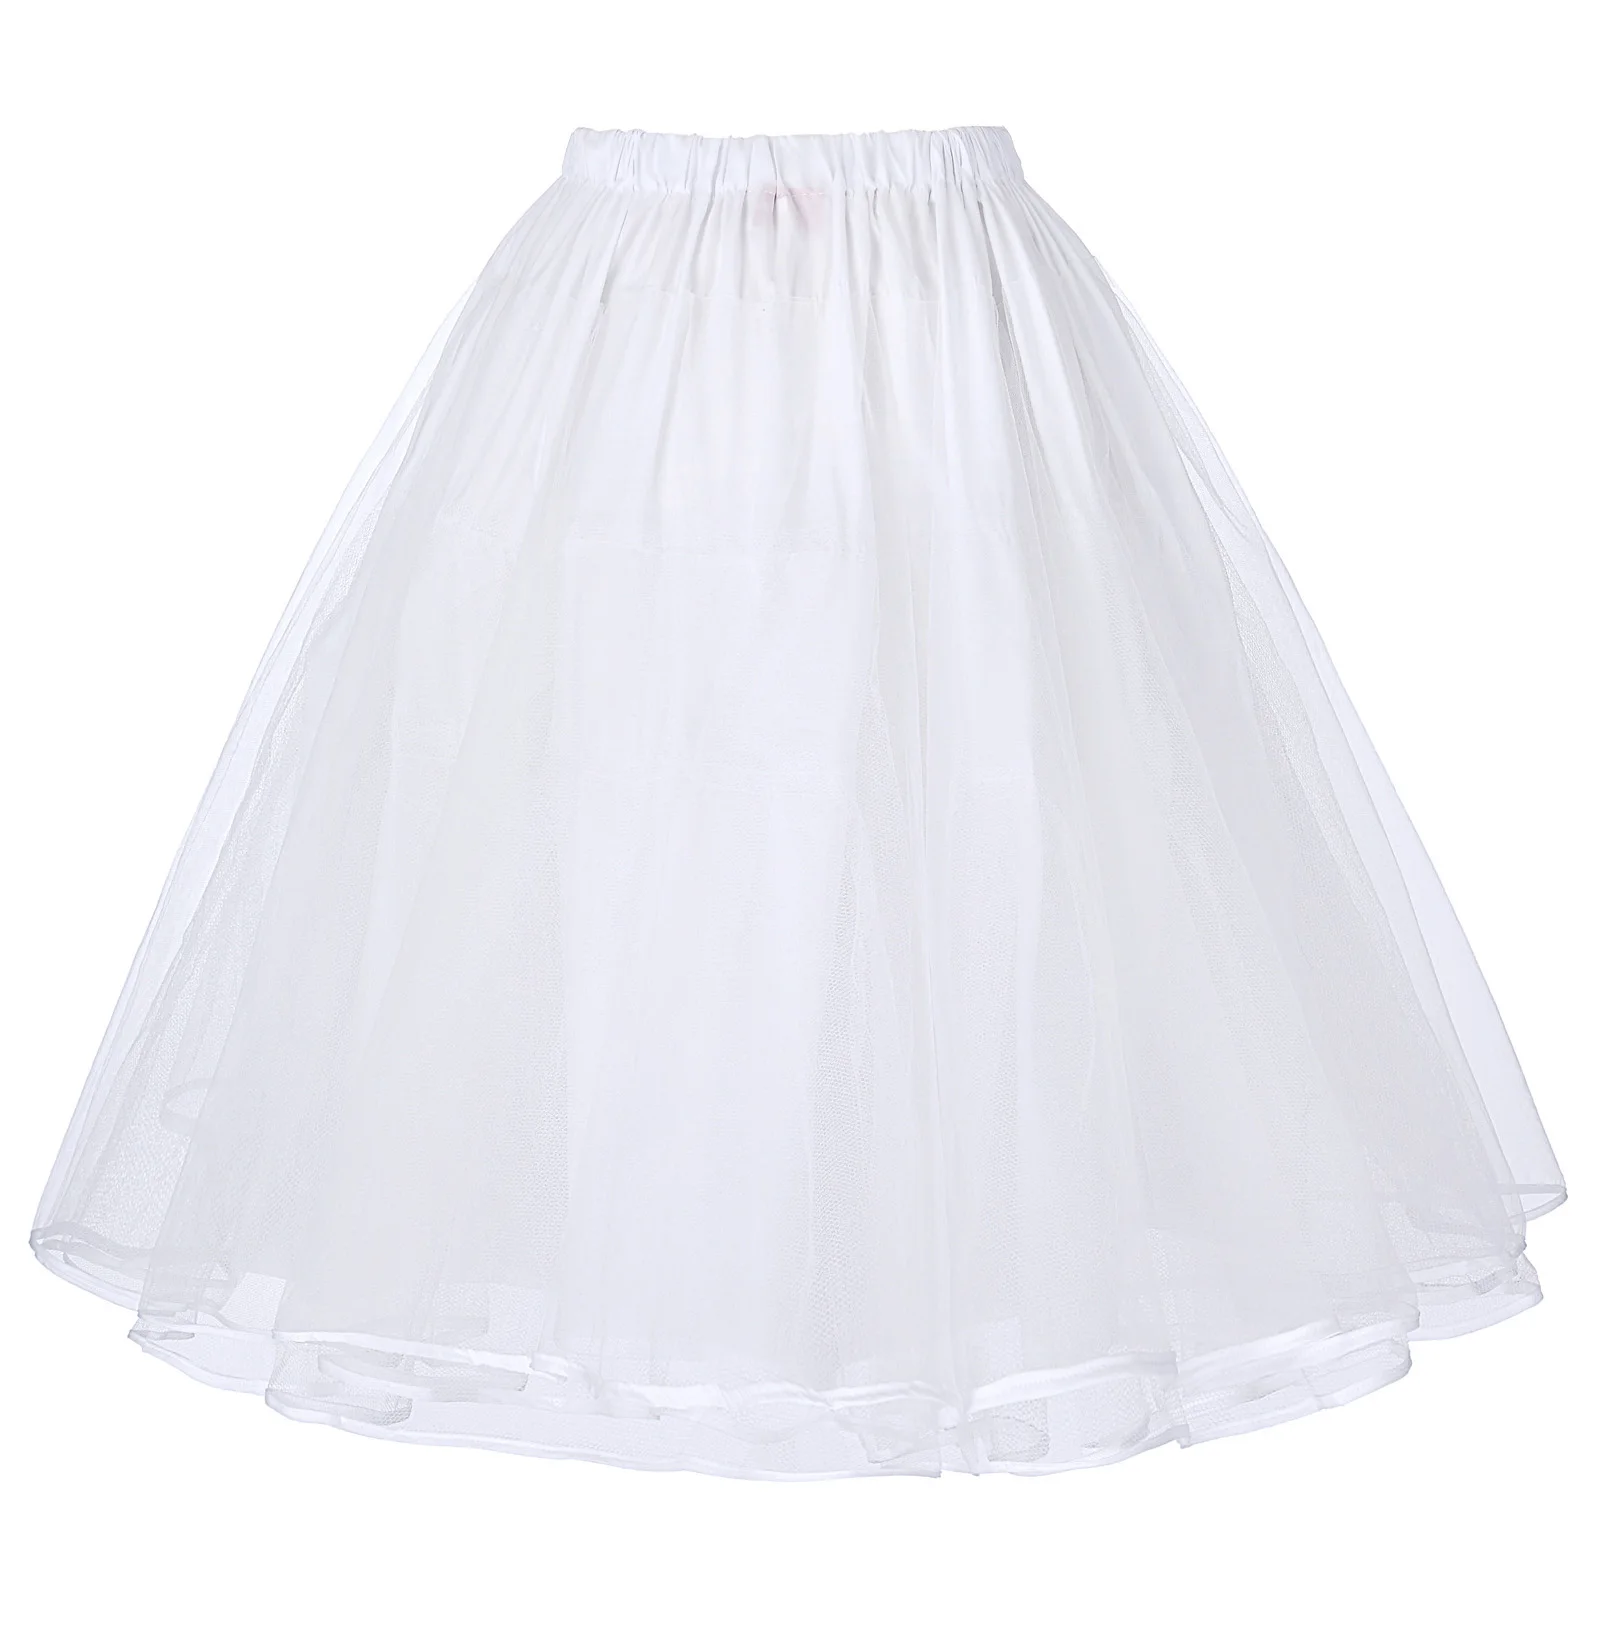 BP черная розовая Женская юбка Роскошная ретро юбка 90s корейский стиль harajuku Винтаж 90s 3 слоя тюль сетка нижняя юбка юбки - Цвет: White